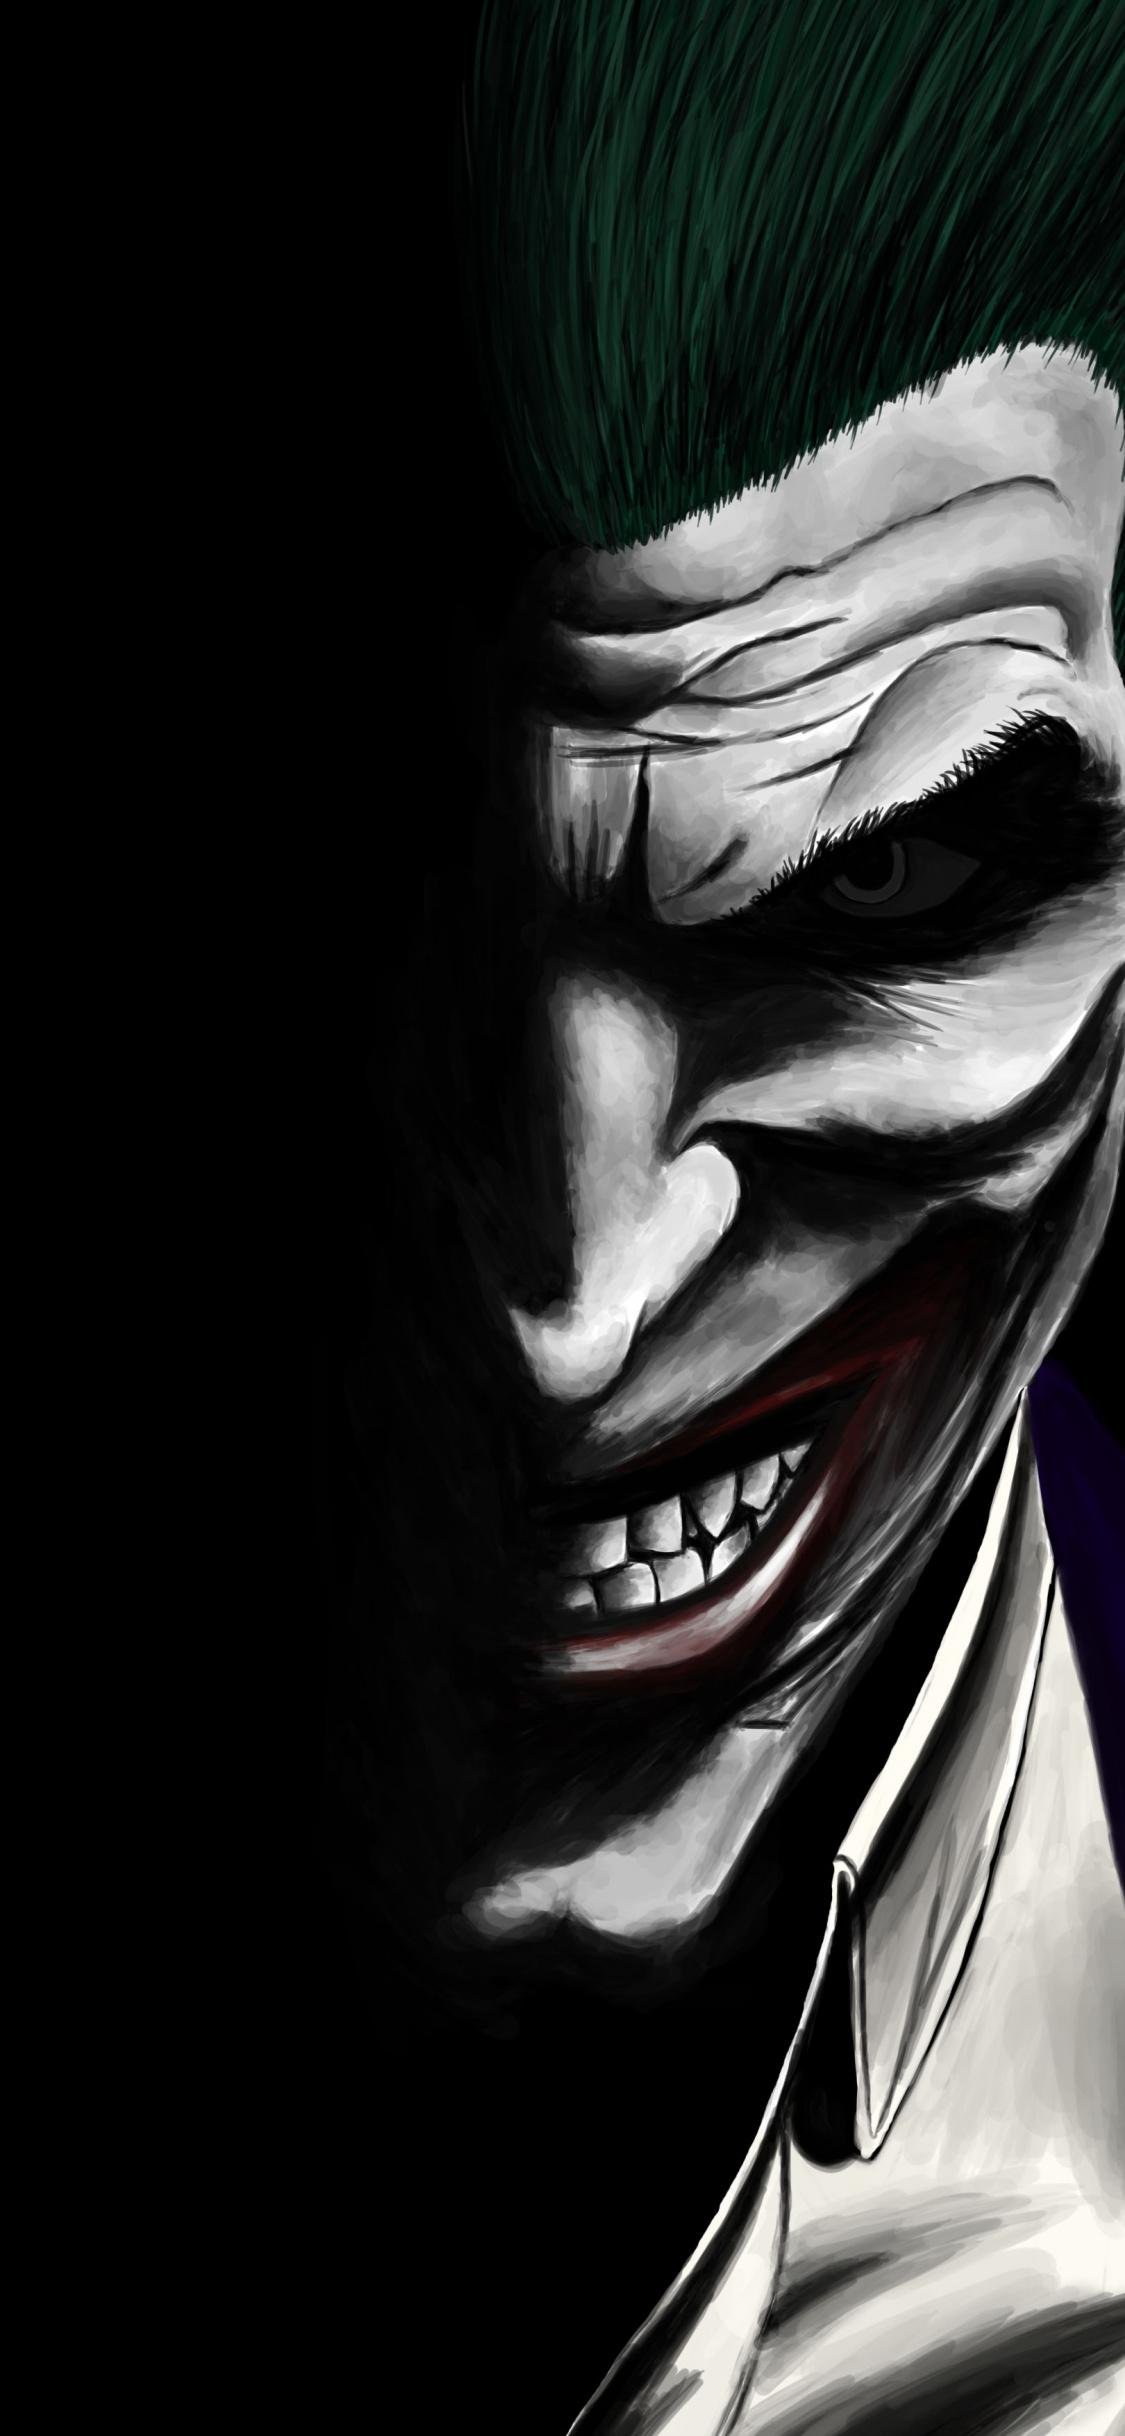 Dark joker Wallpaper Download | MobCup